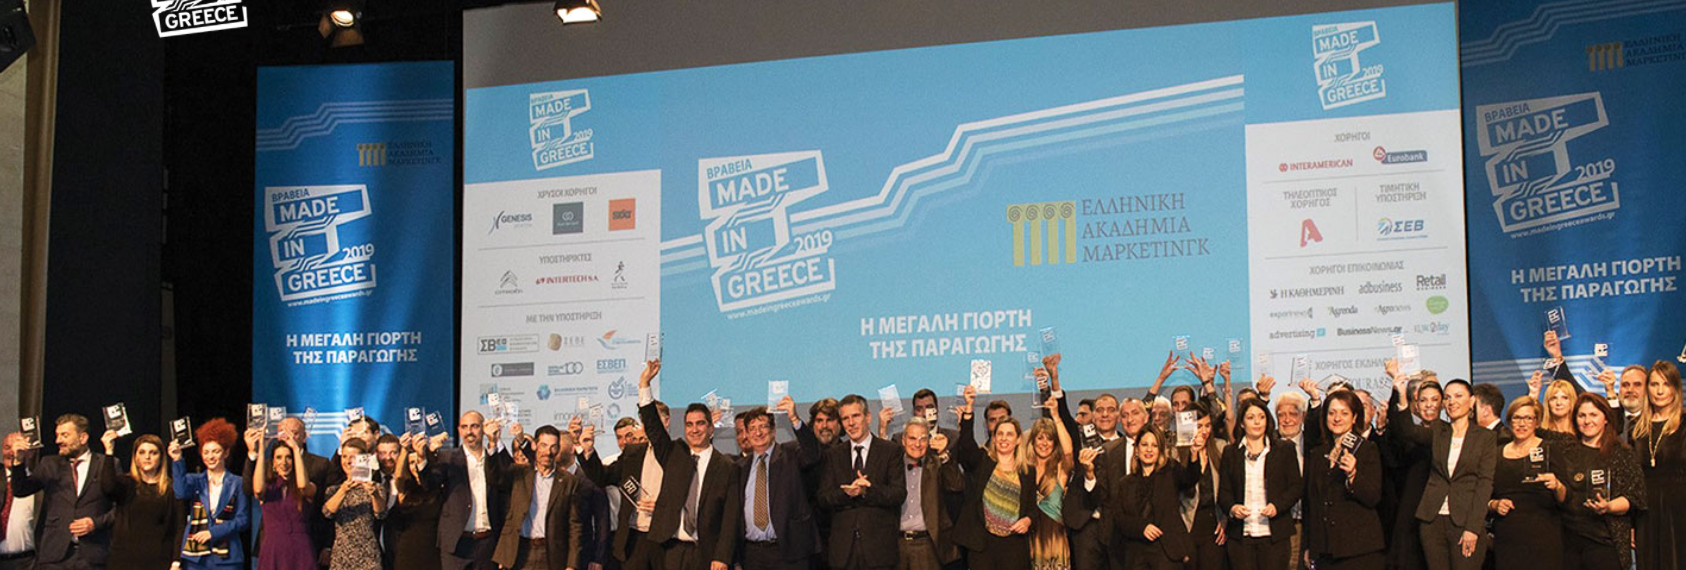 Βραβεία “Made in Greece”: Έως 15 Μαΐου οι αιτήσεις